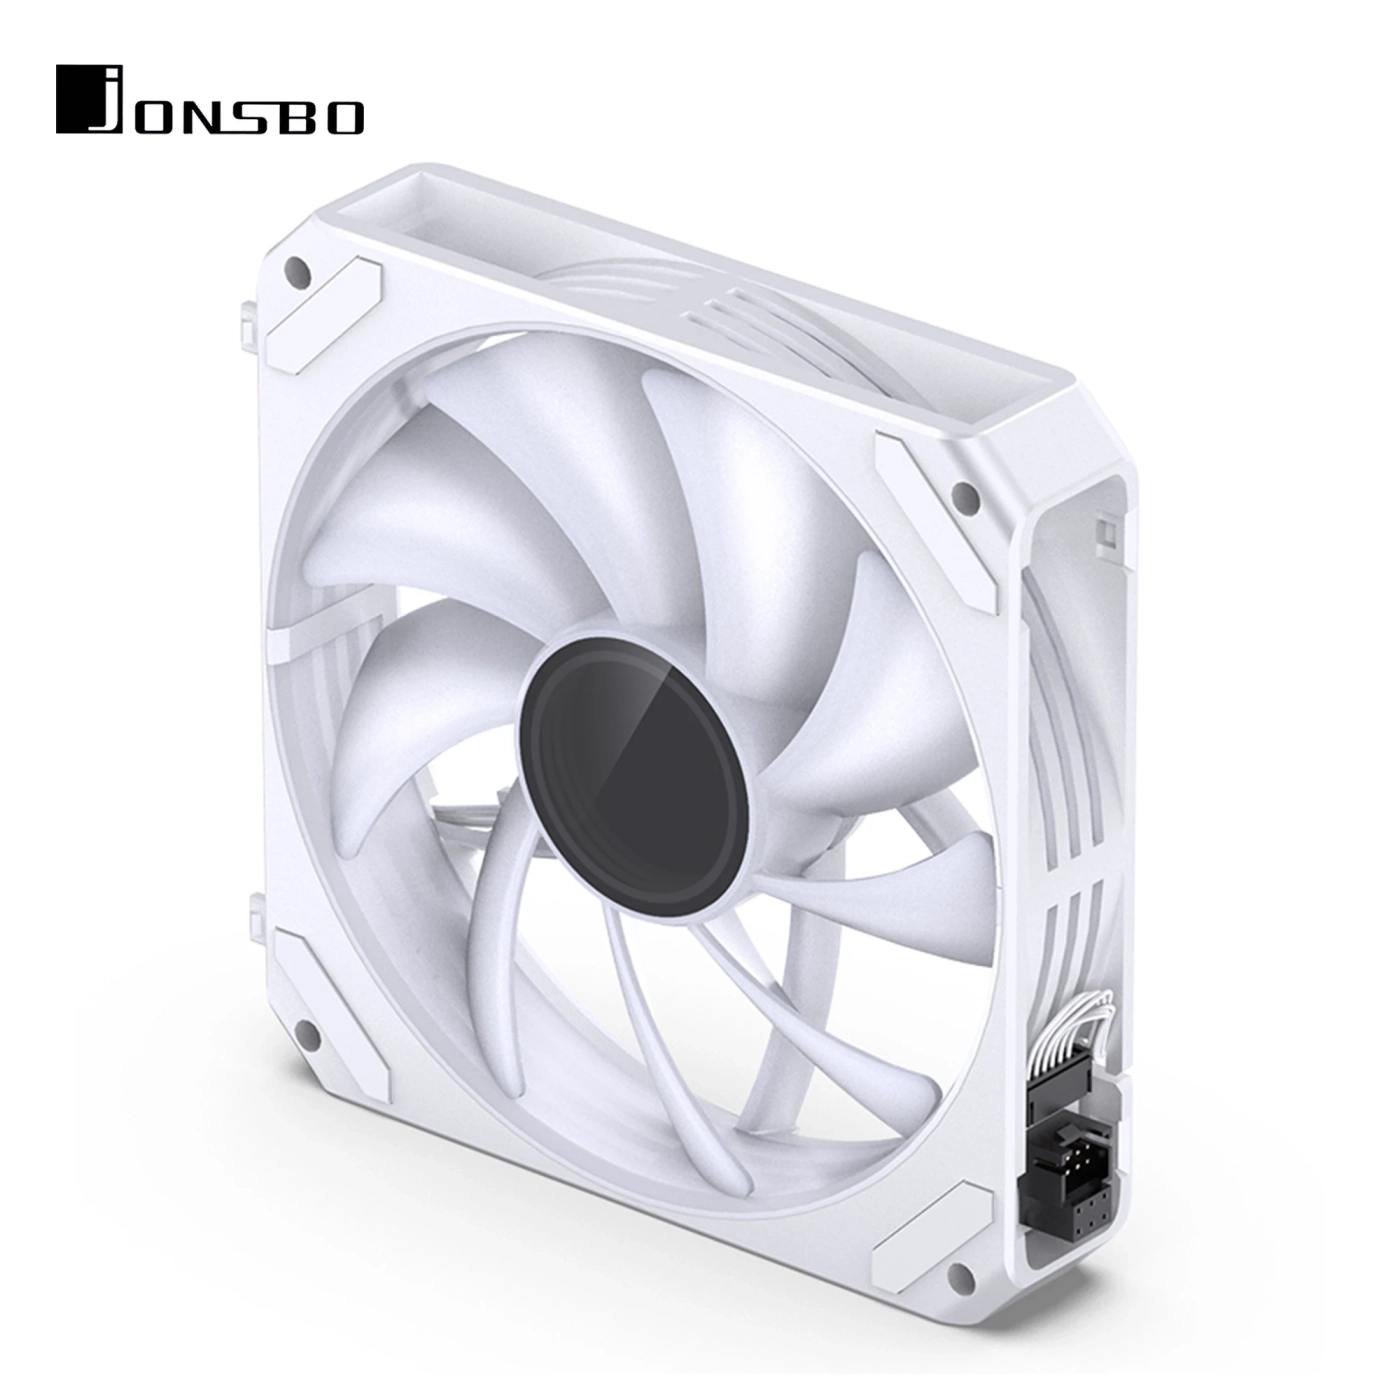 Купить Вентилятор JONSBO ZG-120W (3in1) White (120mm, 500-1500RPM, 29.2dB, 4pin) - фото 5